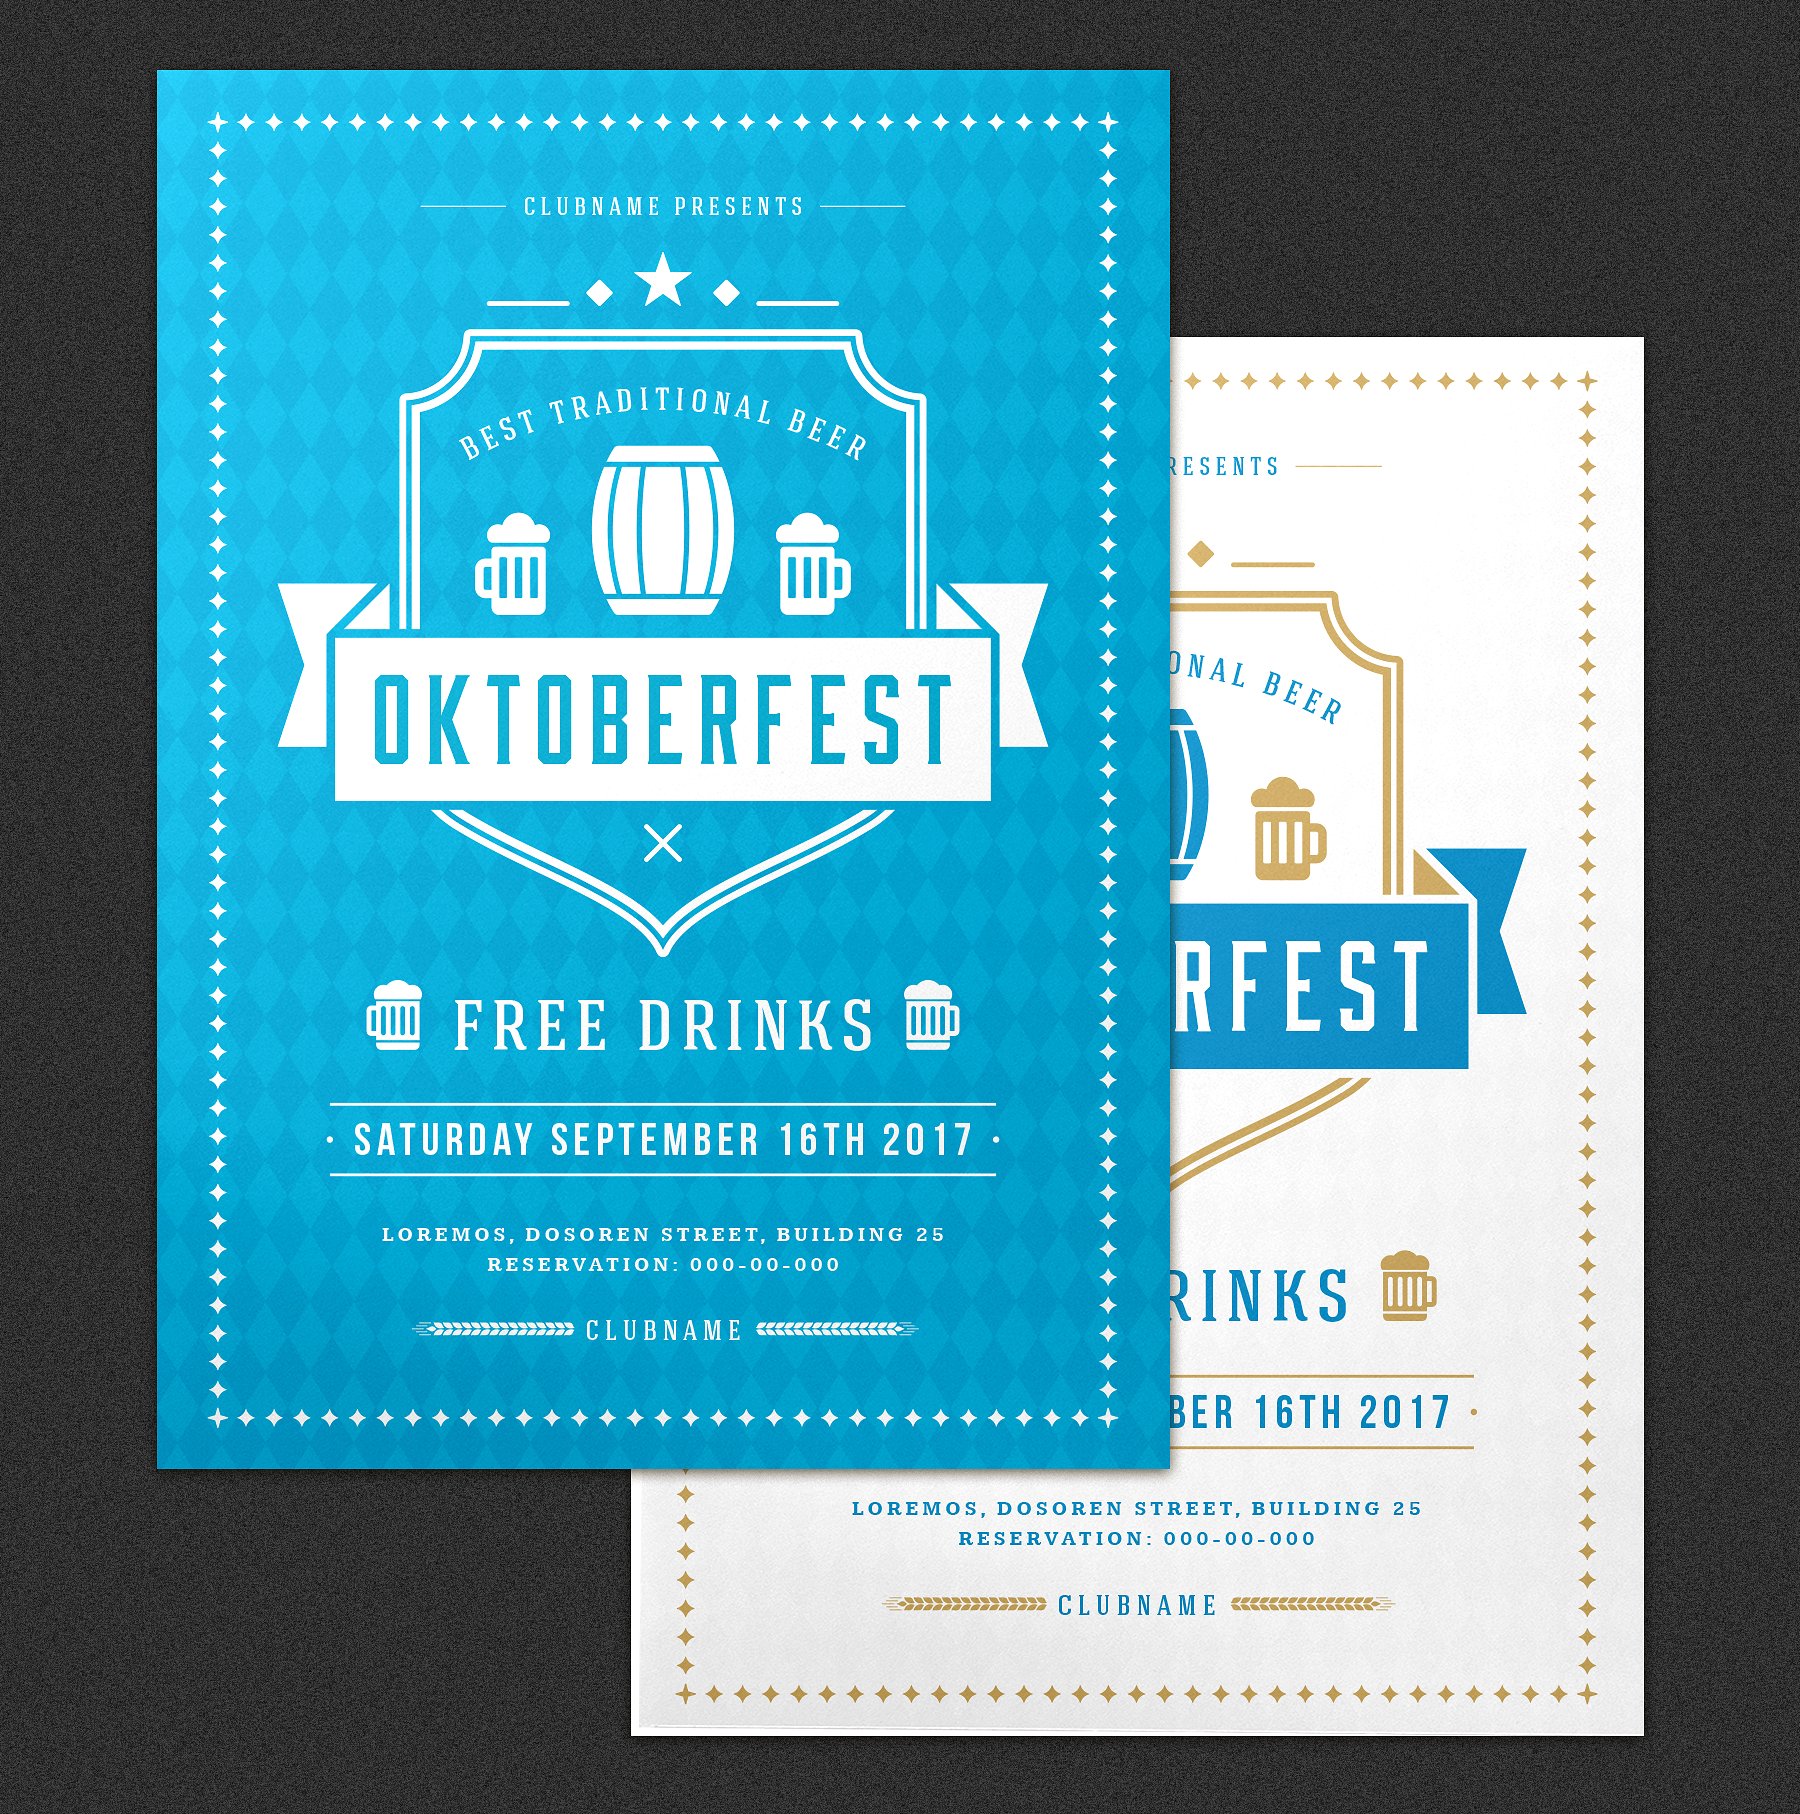 经典设计风格啤酒节海报模板素材 Oktoberfest Flyer Template插图(2)